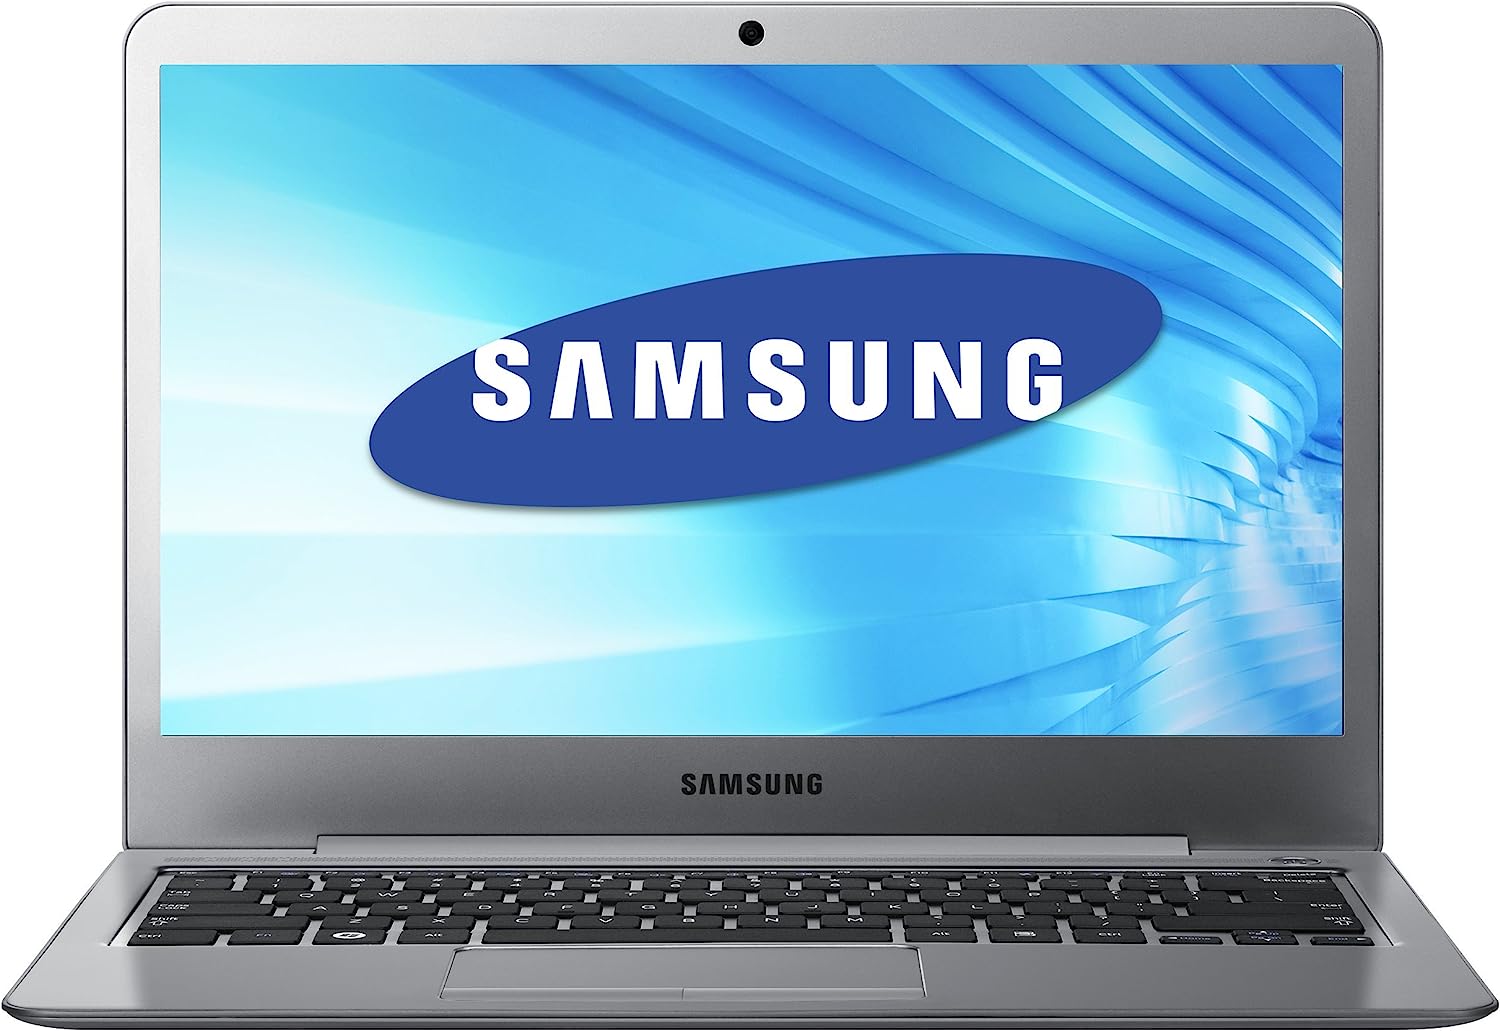 Samsung Series 5 Ultrabook NP530U4C Notebook